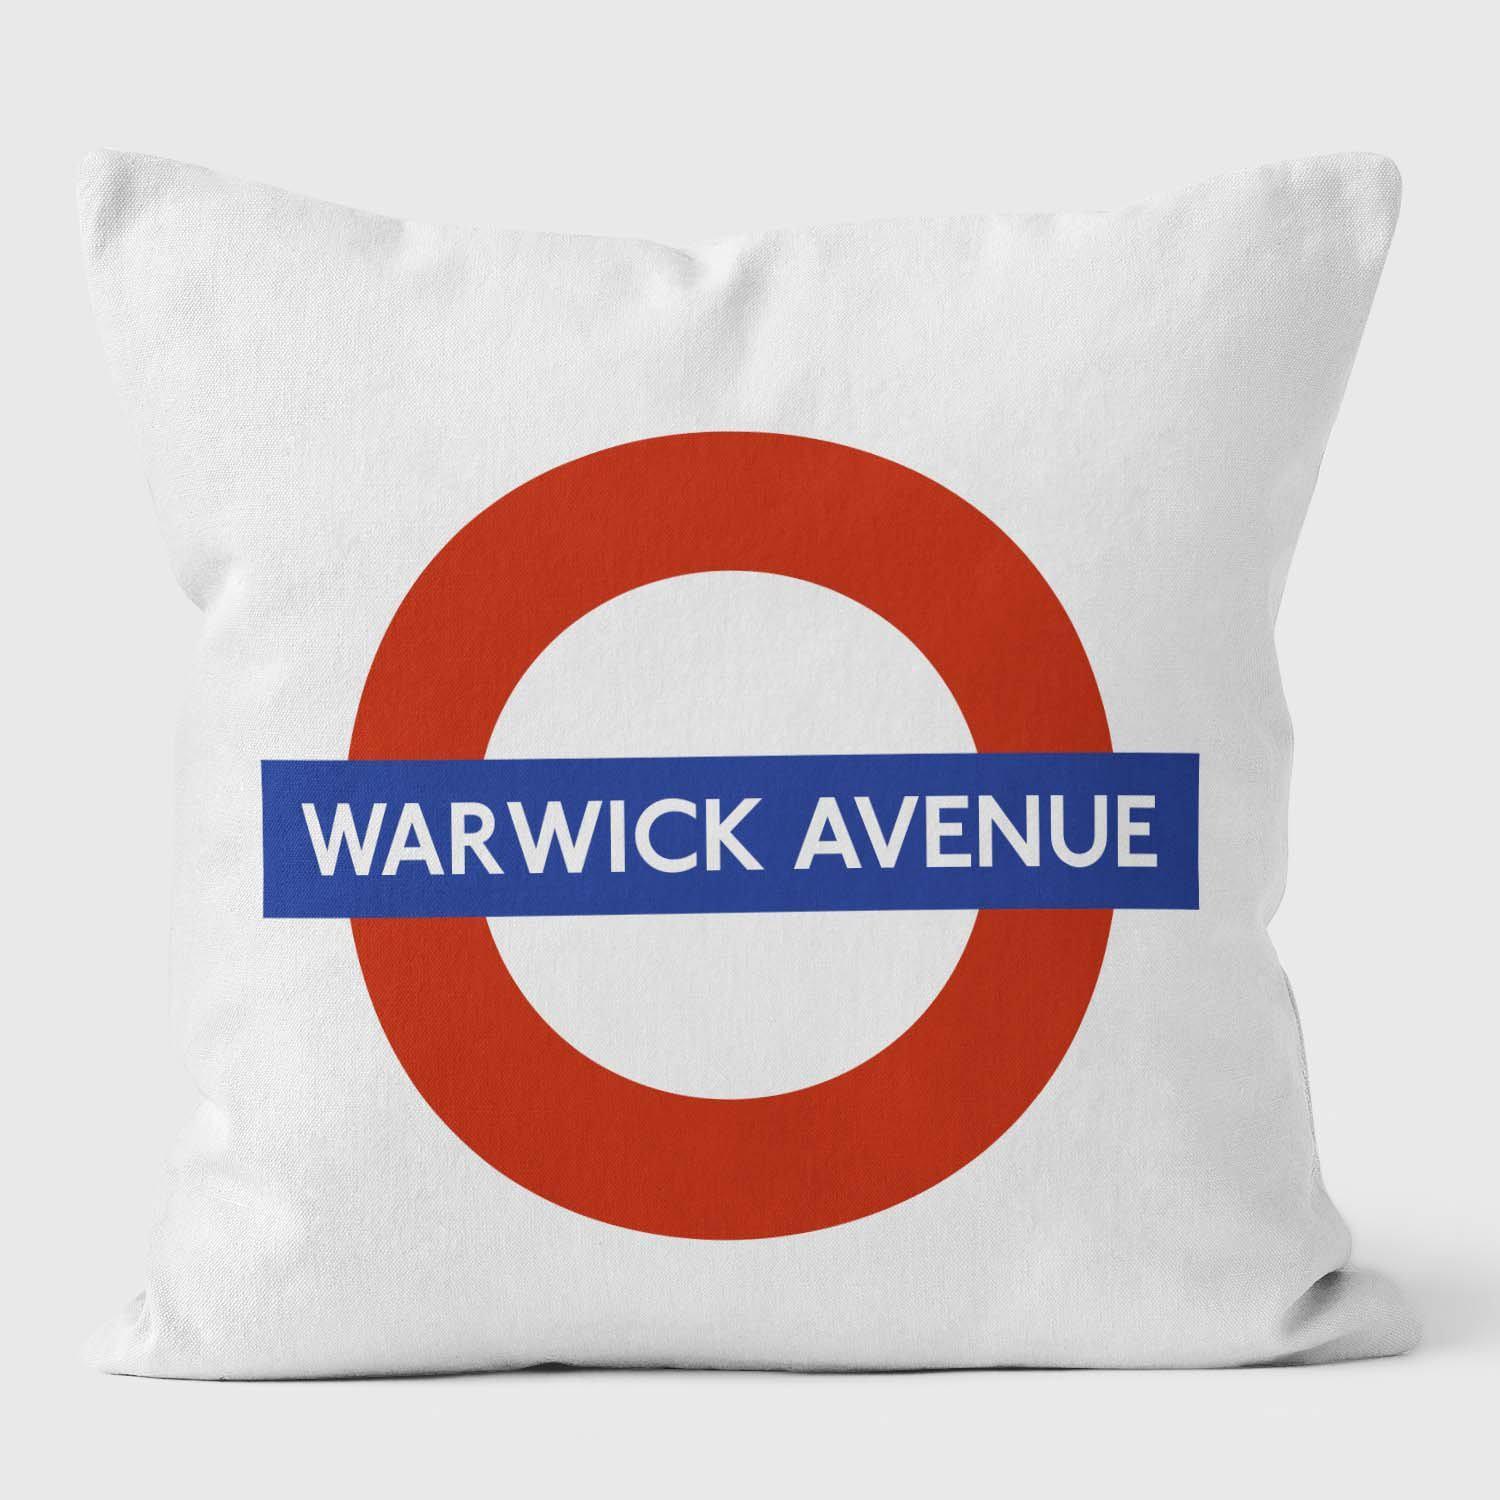 Warwick Avenue London Underground Tube Station Roundel Cushion - Handmade Cushions UK - WeLoveCushions